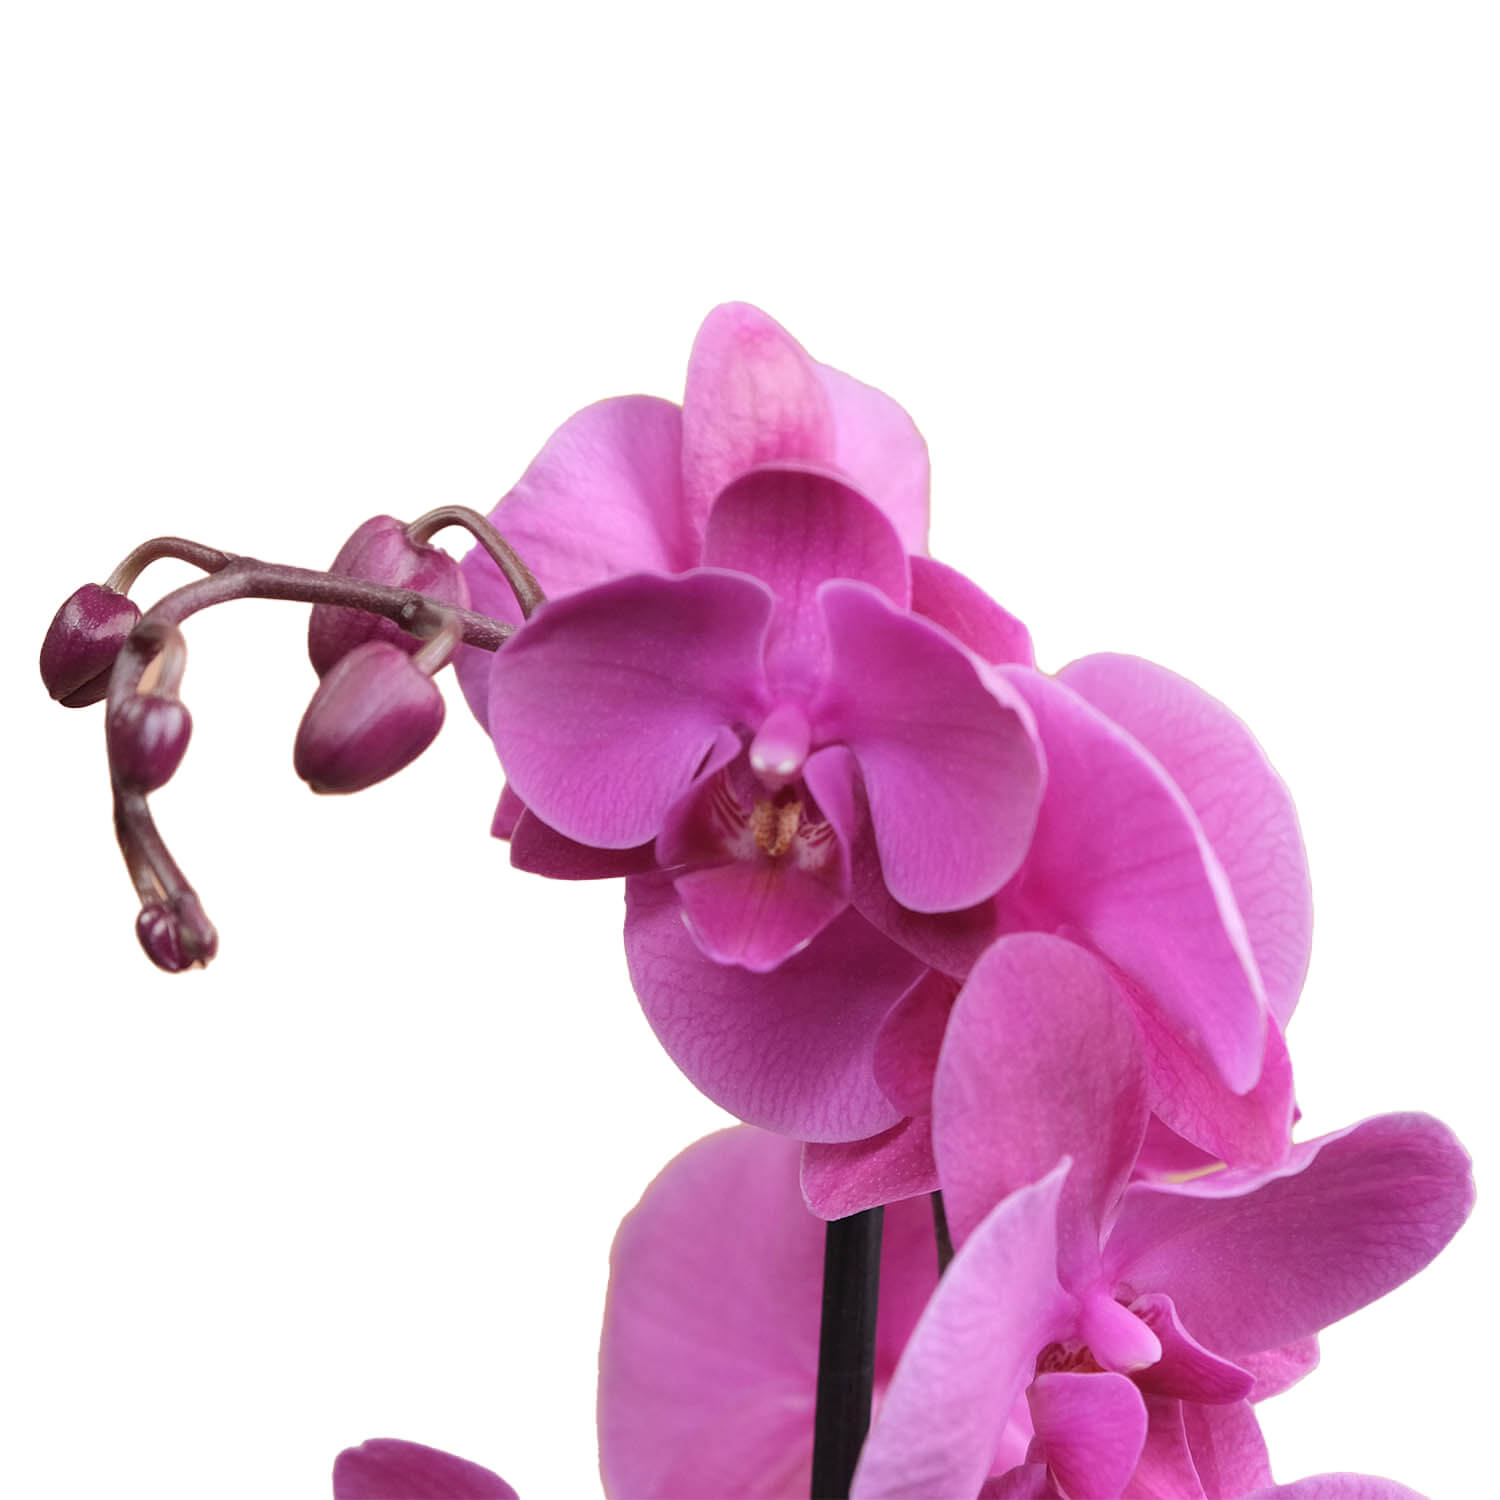 Capella – Mor & Fuşya Orkide